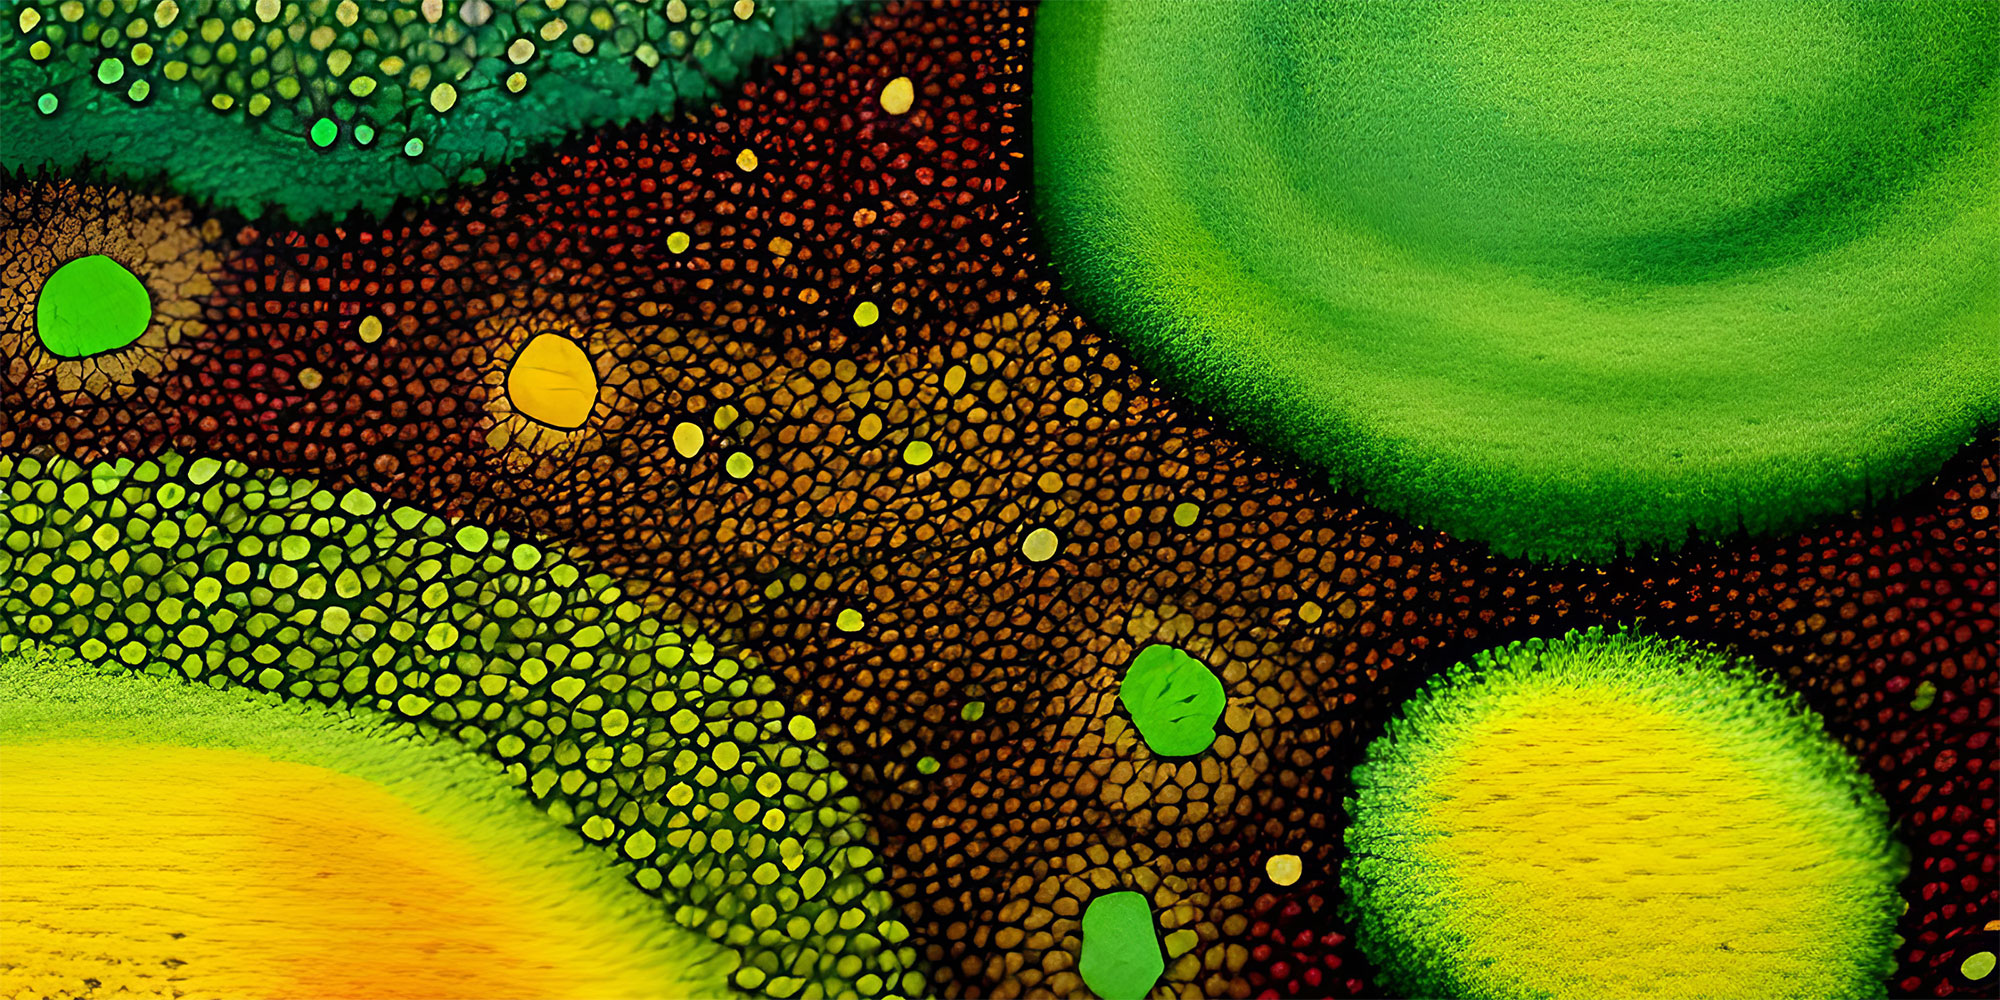 Arte abstracto del virome del suelo.